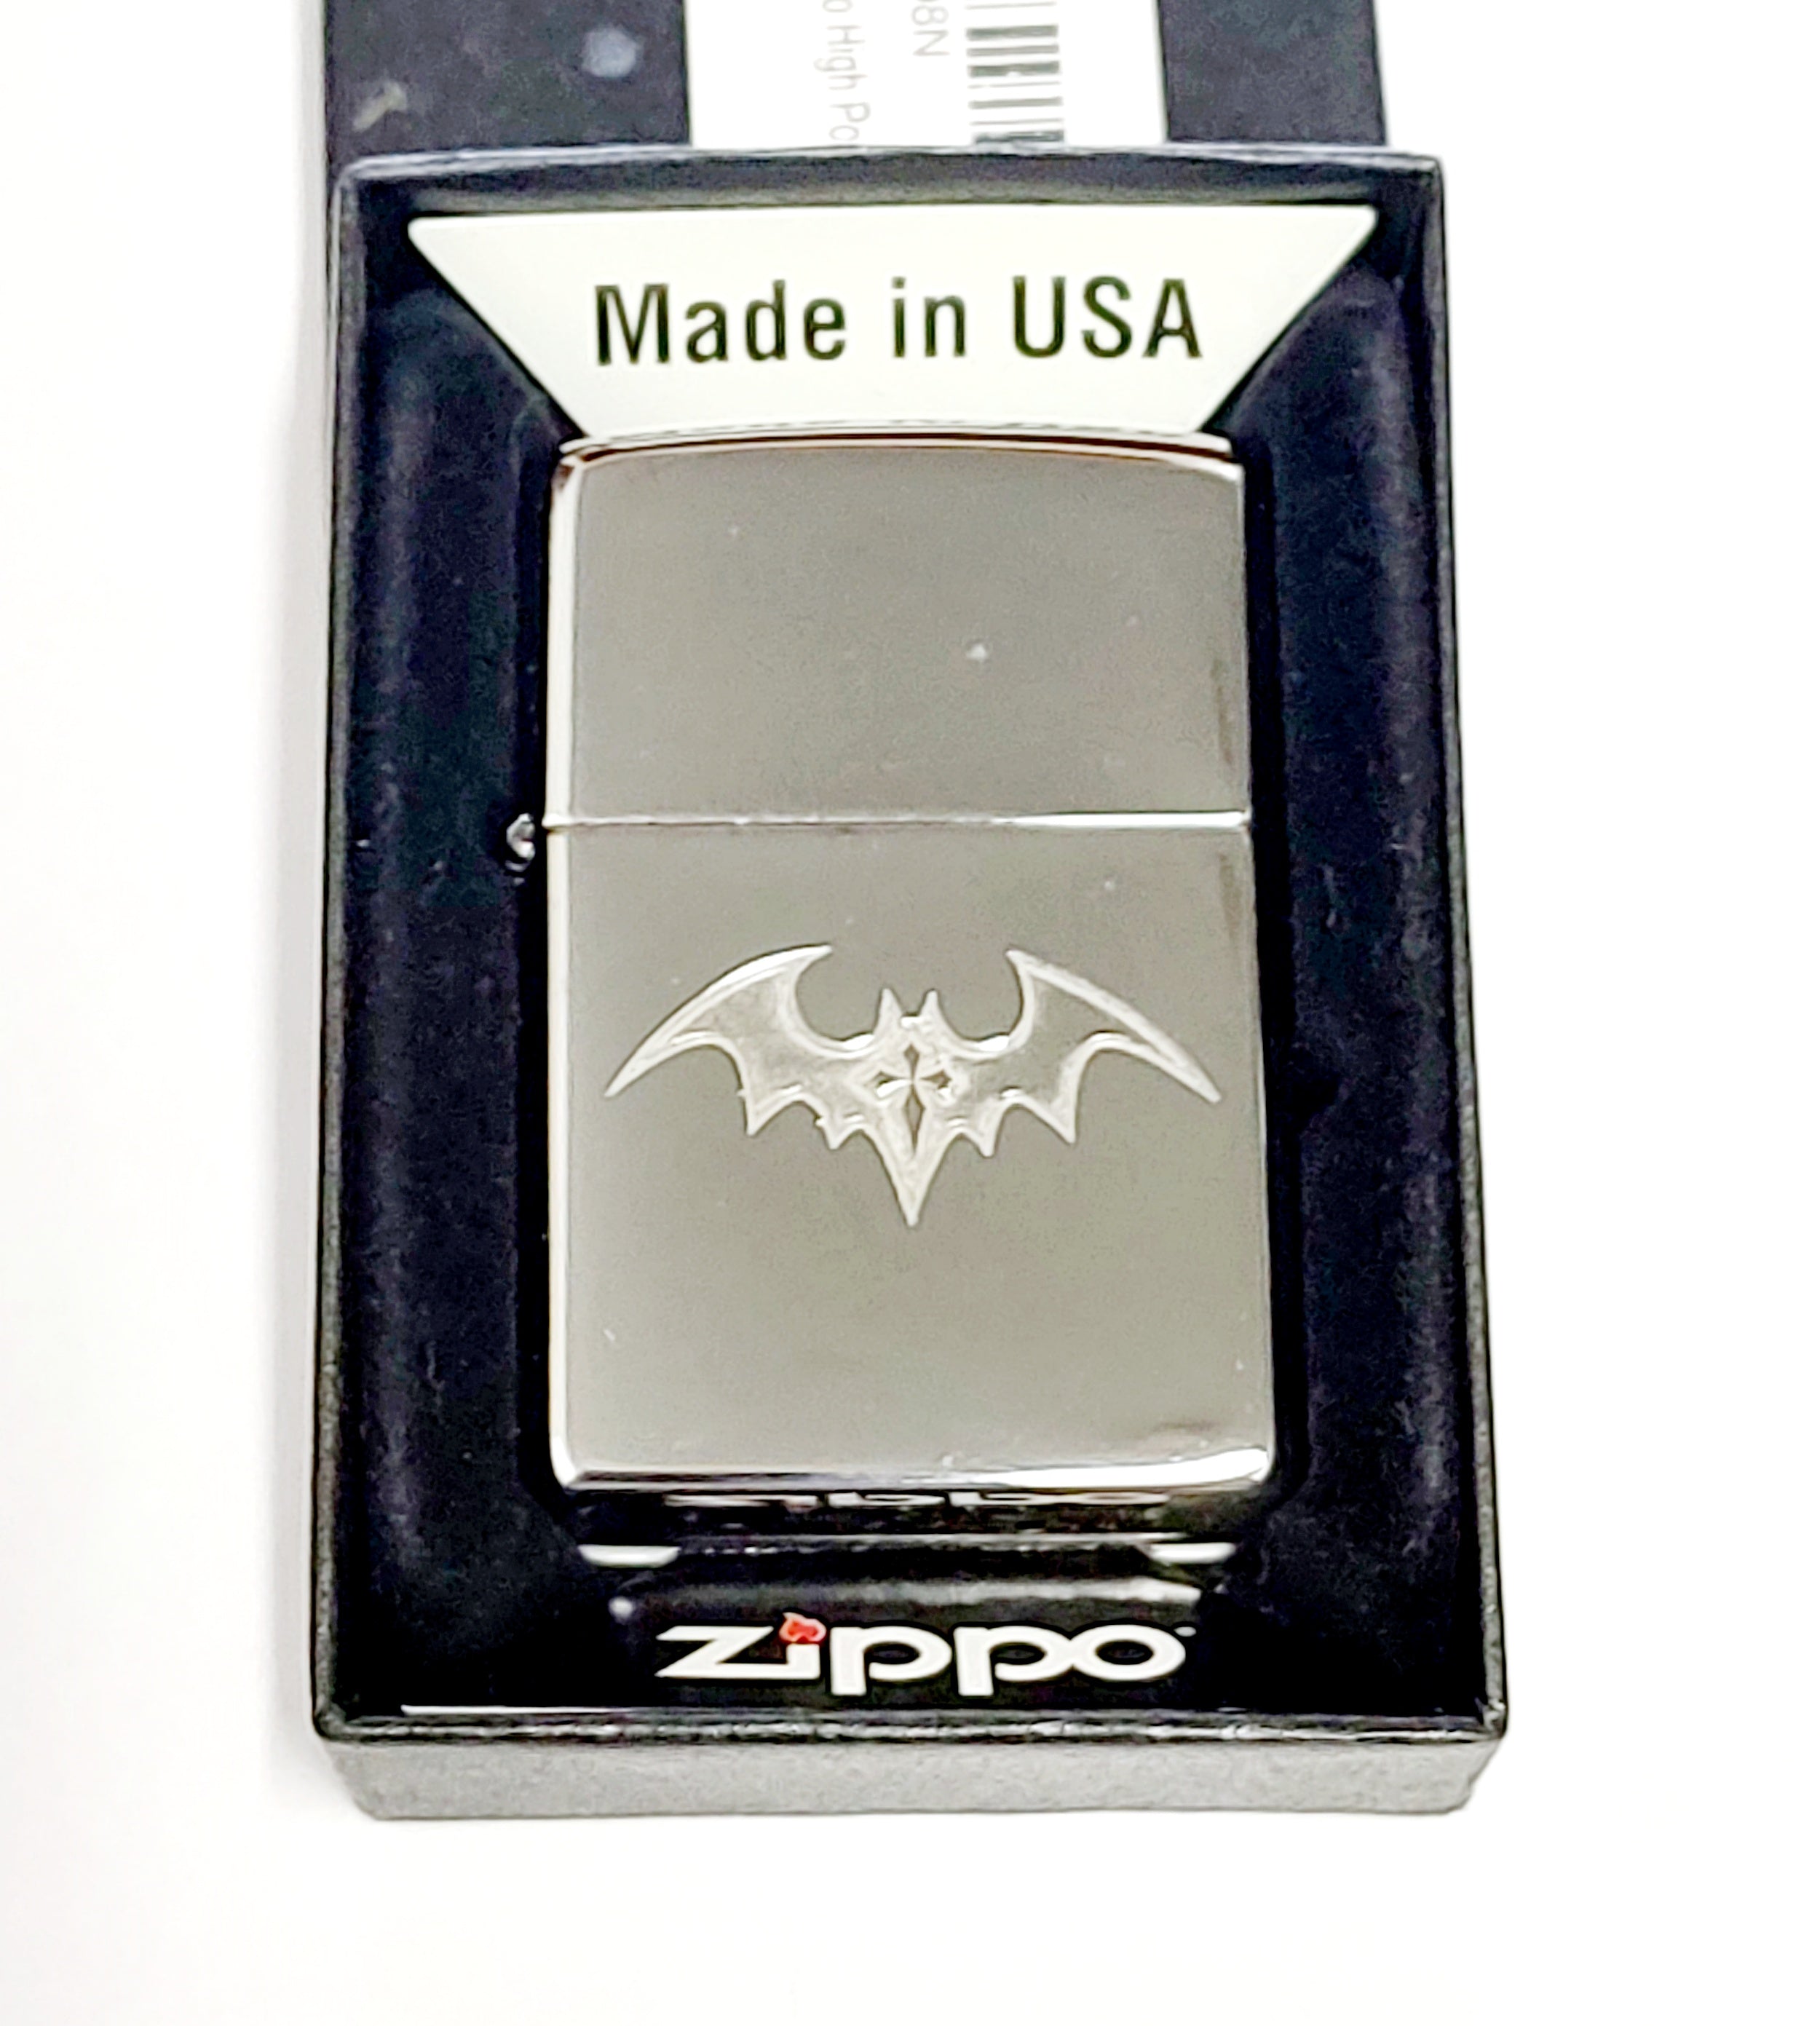 2016 Dark BAT with Gothic Cross Tattoo Custom Zippo Lighter